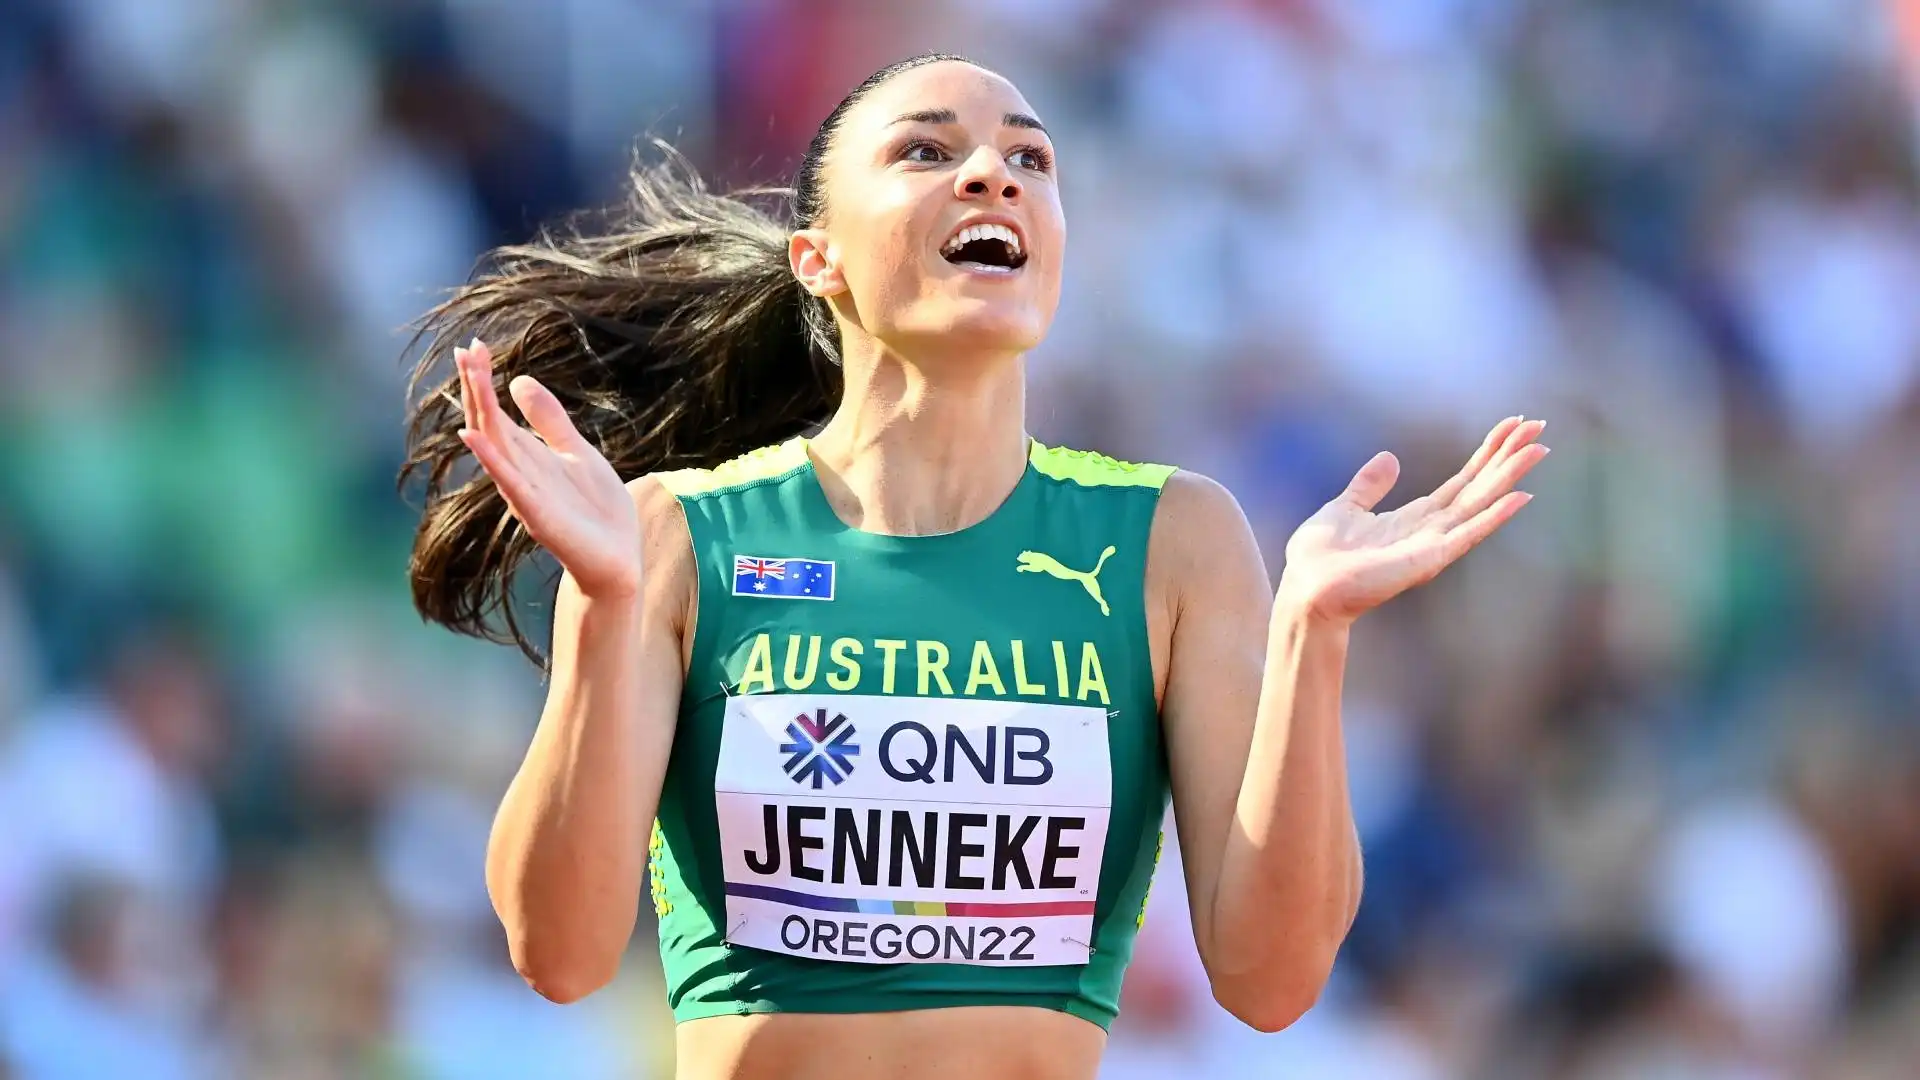 Nel 2011 partecipa agli Australian Athletics Championships, arrivando terza